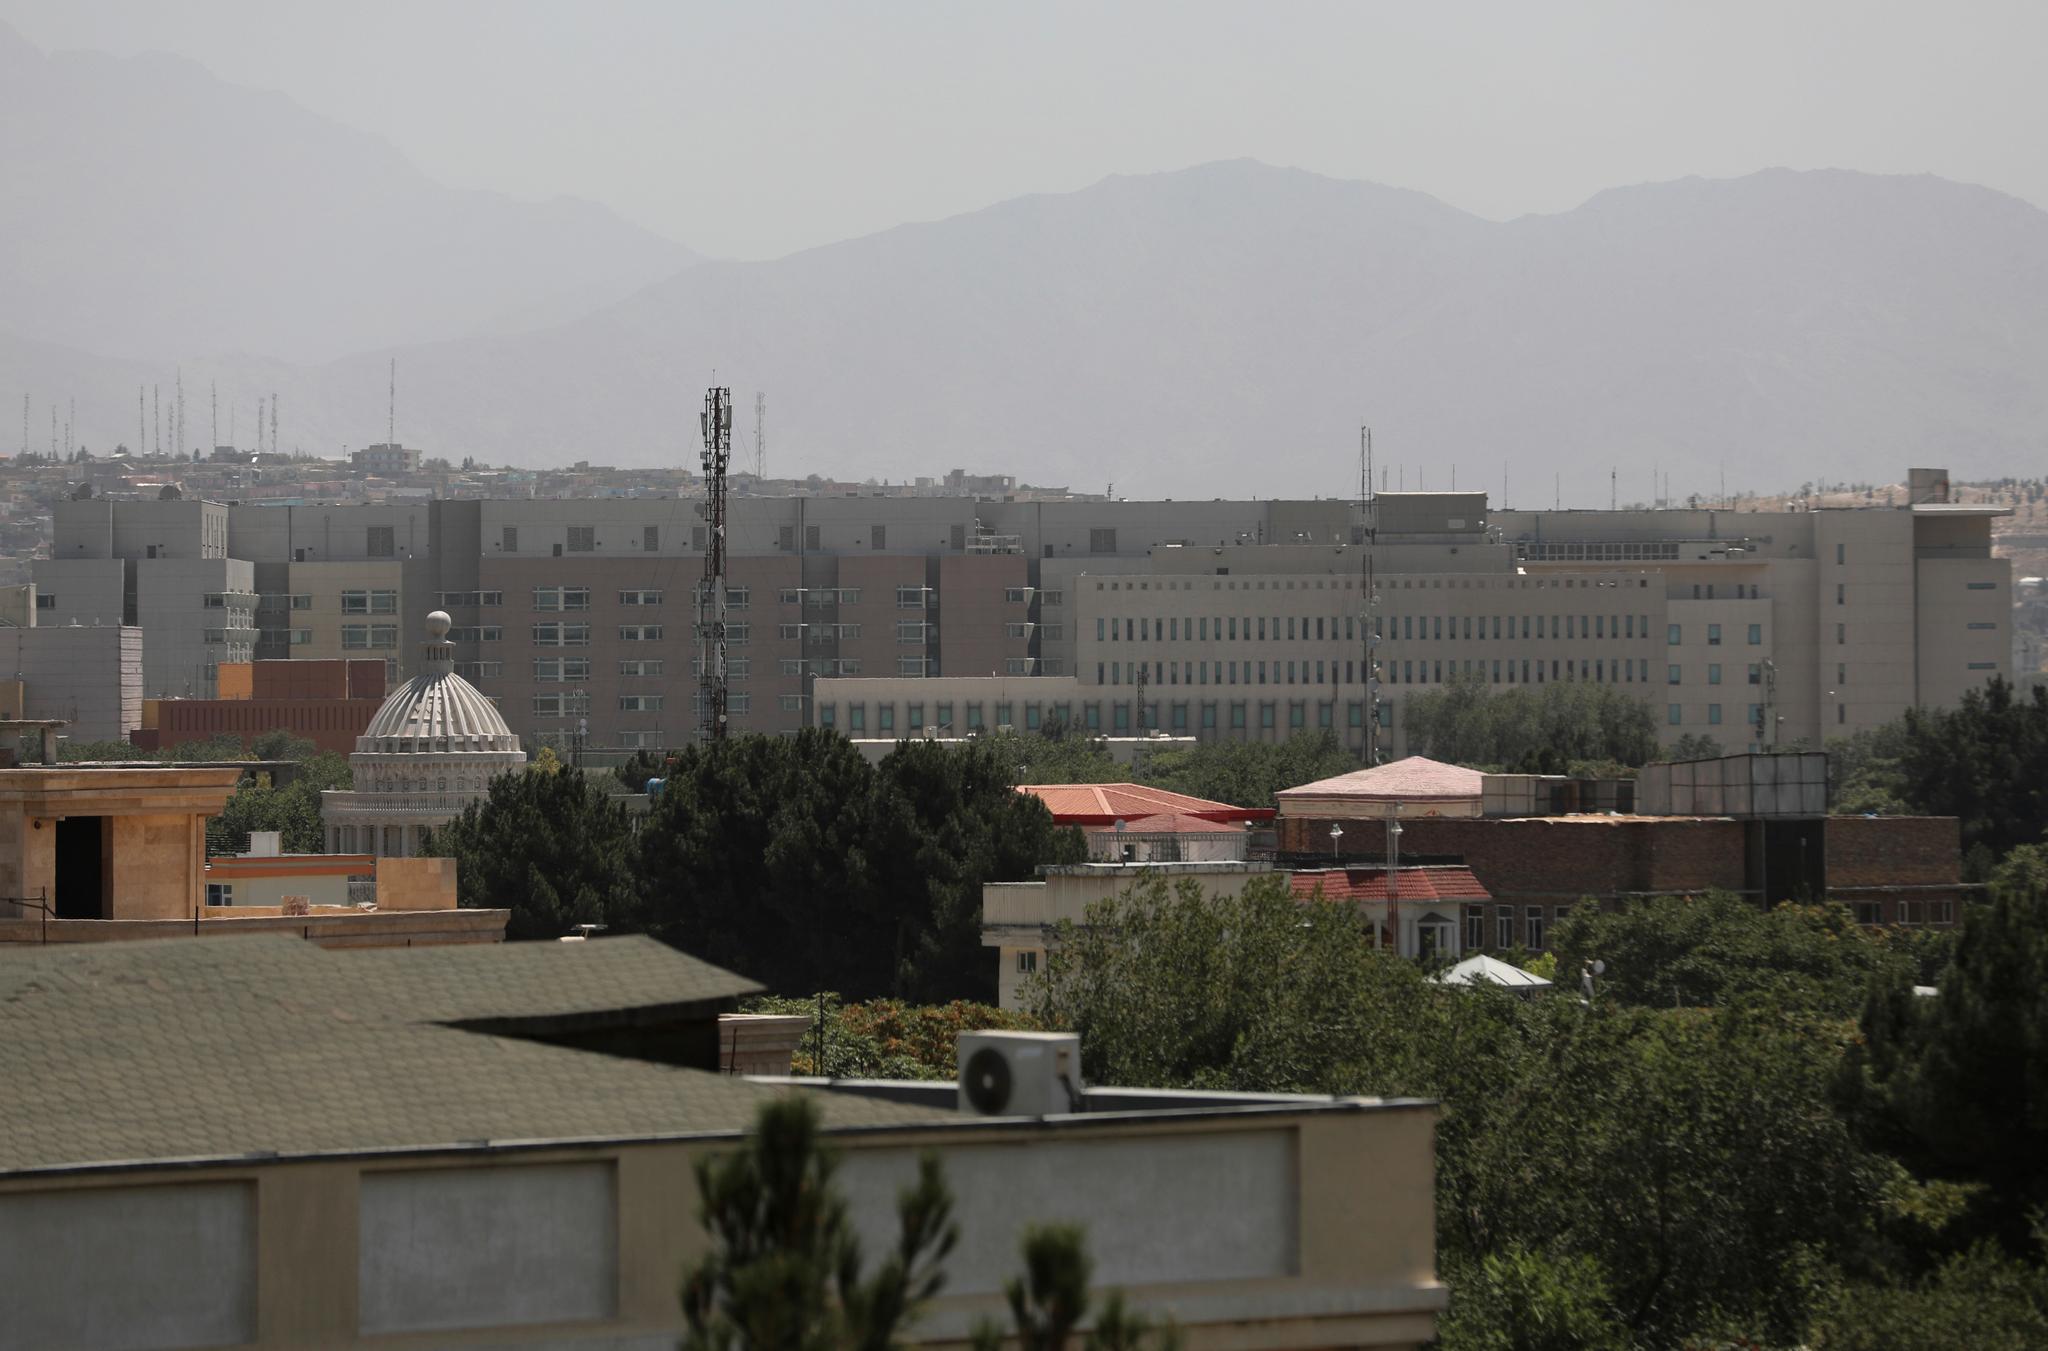  Det sendes rundt 3000 amerikanske soldater for å bistå i en delvis evakuering av de amerikanske ambassadebygningene. De første soldatene ankom Kabul fredag, resten skal ankomme innen søndag.